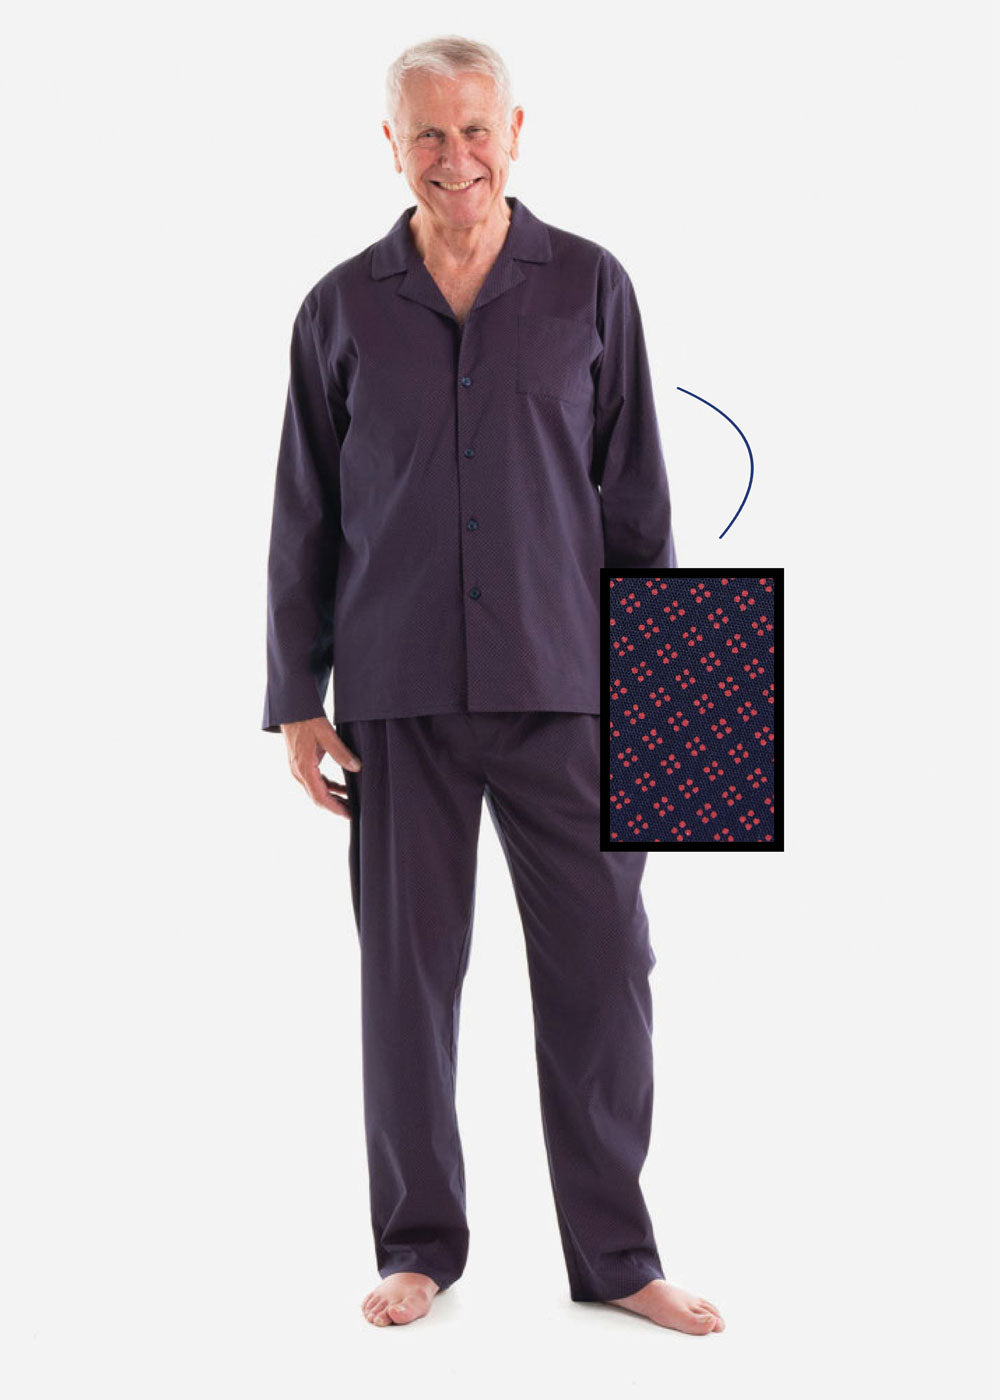 William Lightweight Long Sleeve Cotton Pyjama